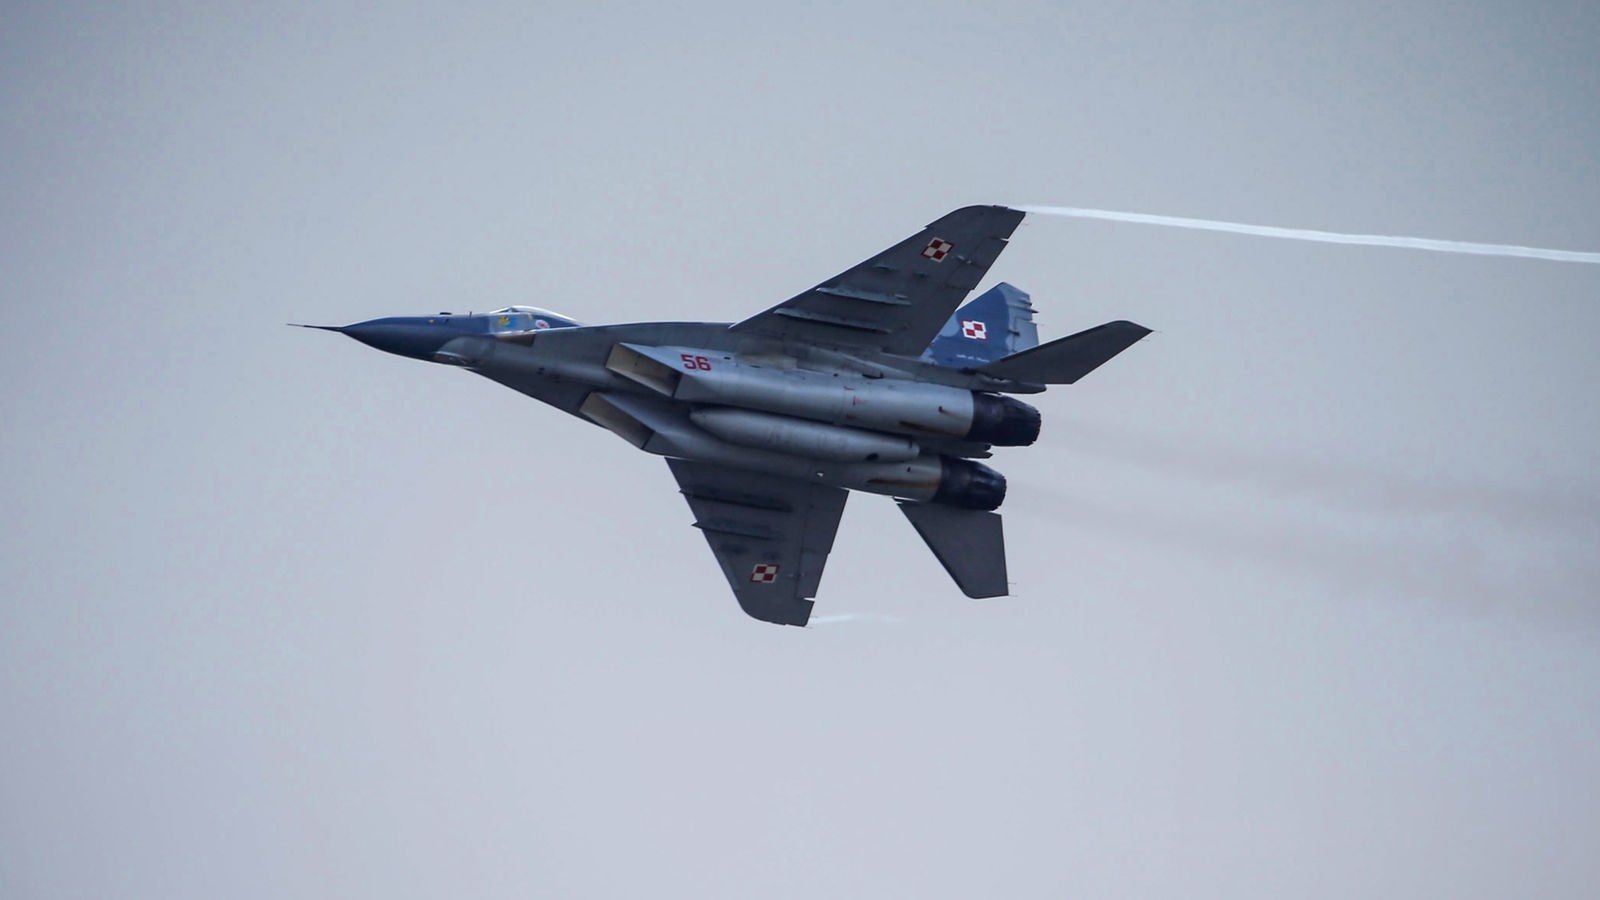 Rząd federalny: Polska wydała zgodę na dostawę pięciu samolotów bojowych na Ukrainę – aktualność